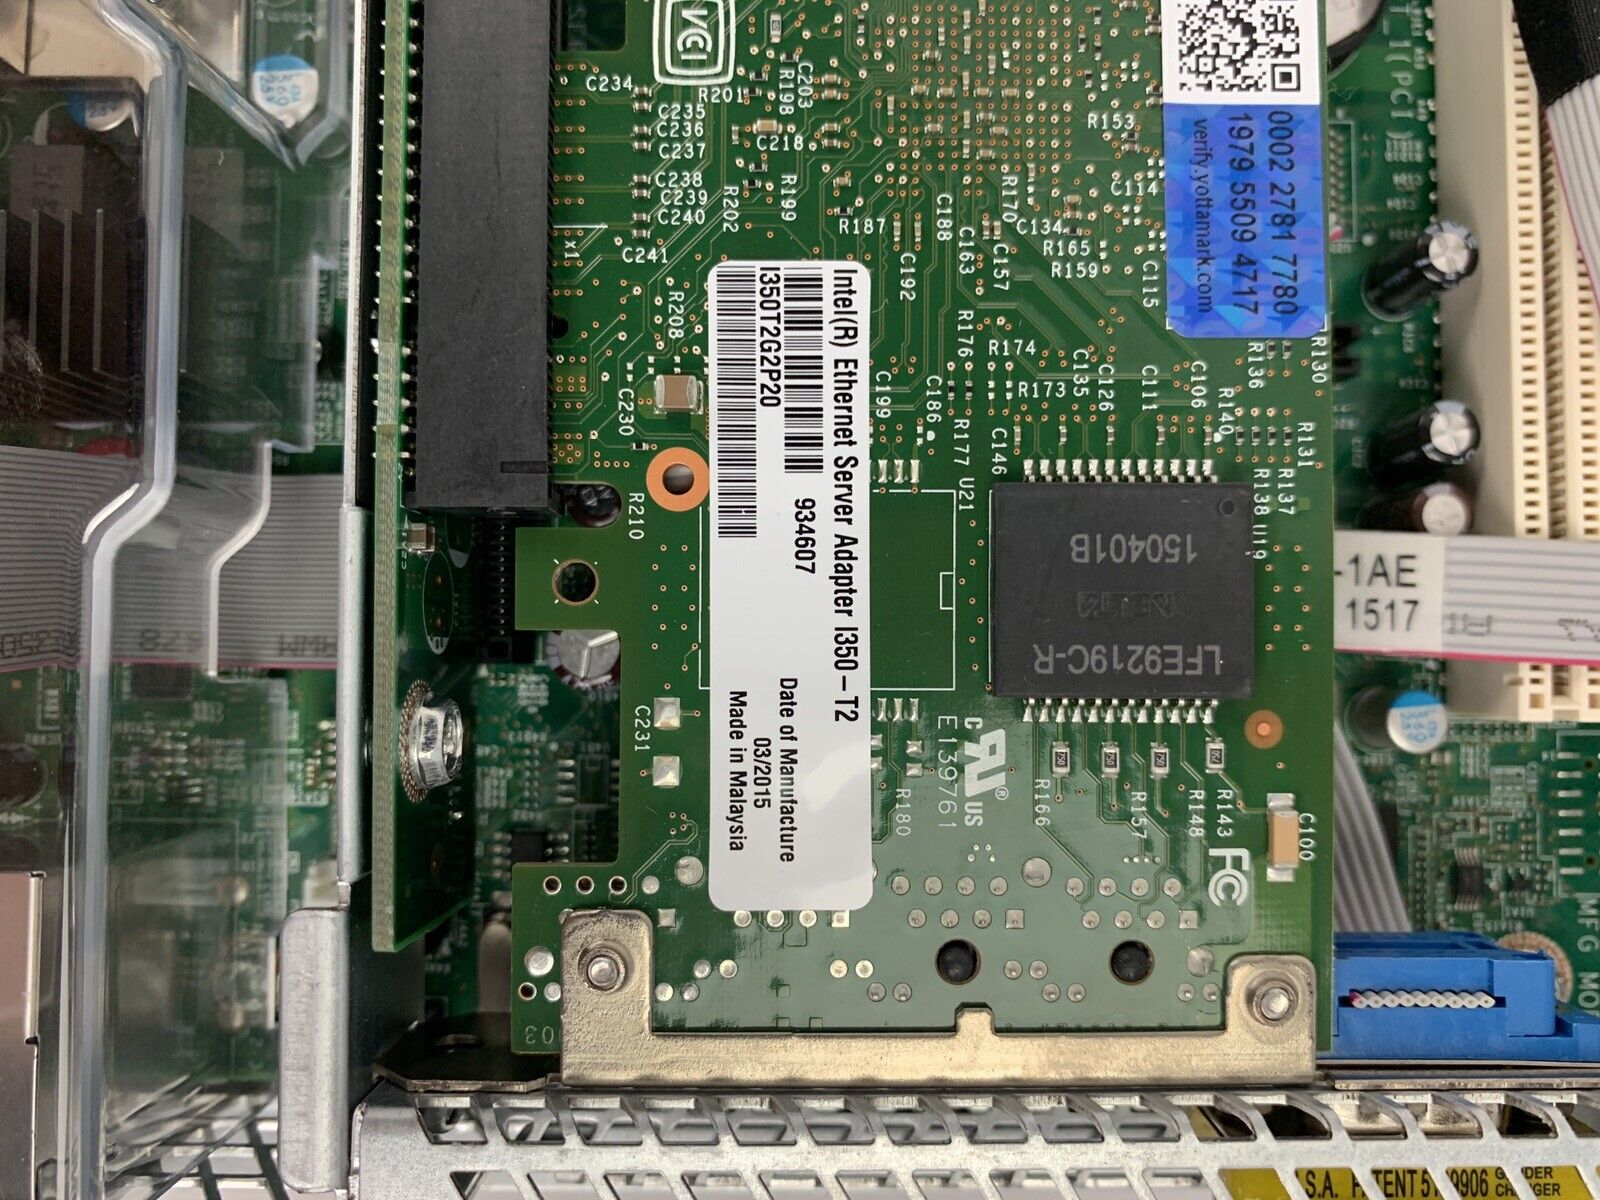 EMC SKBFP RSA Network Appliance Intel Xeon E3-1225 3.10 GHz 8GB RAM No OS No HDD